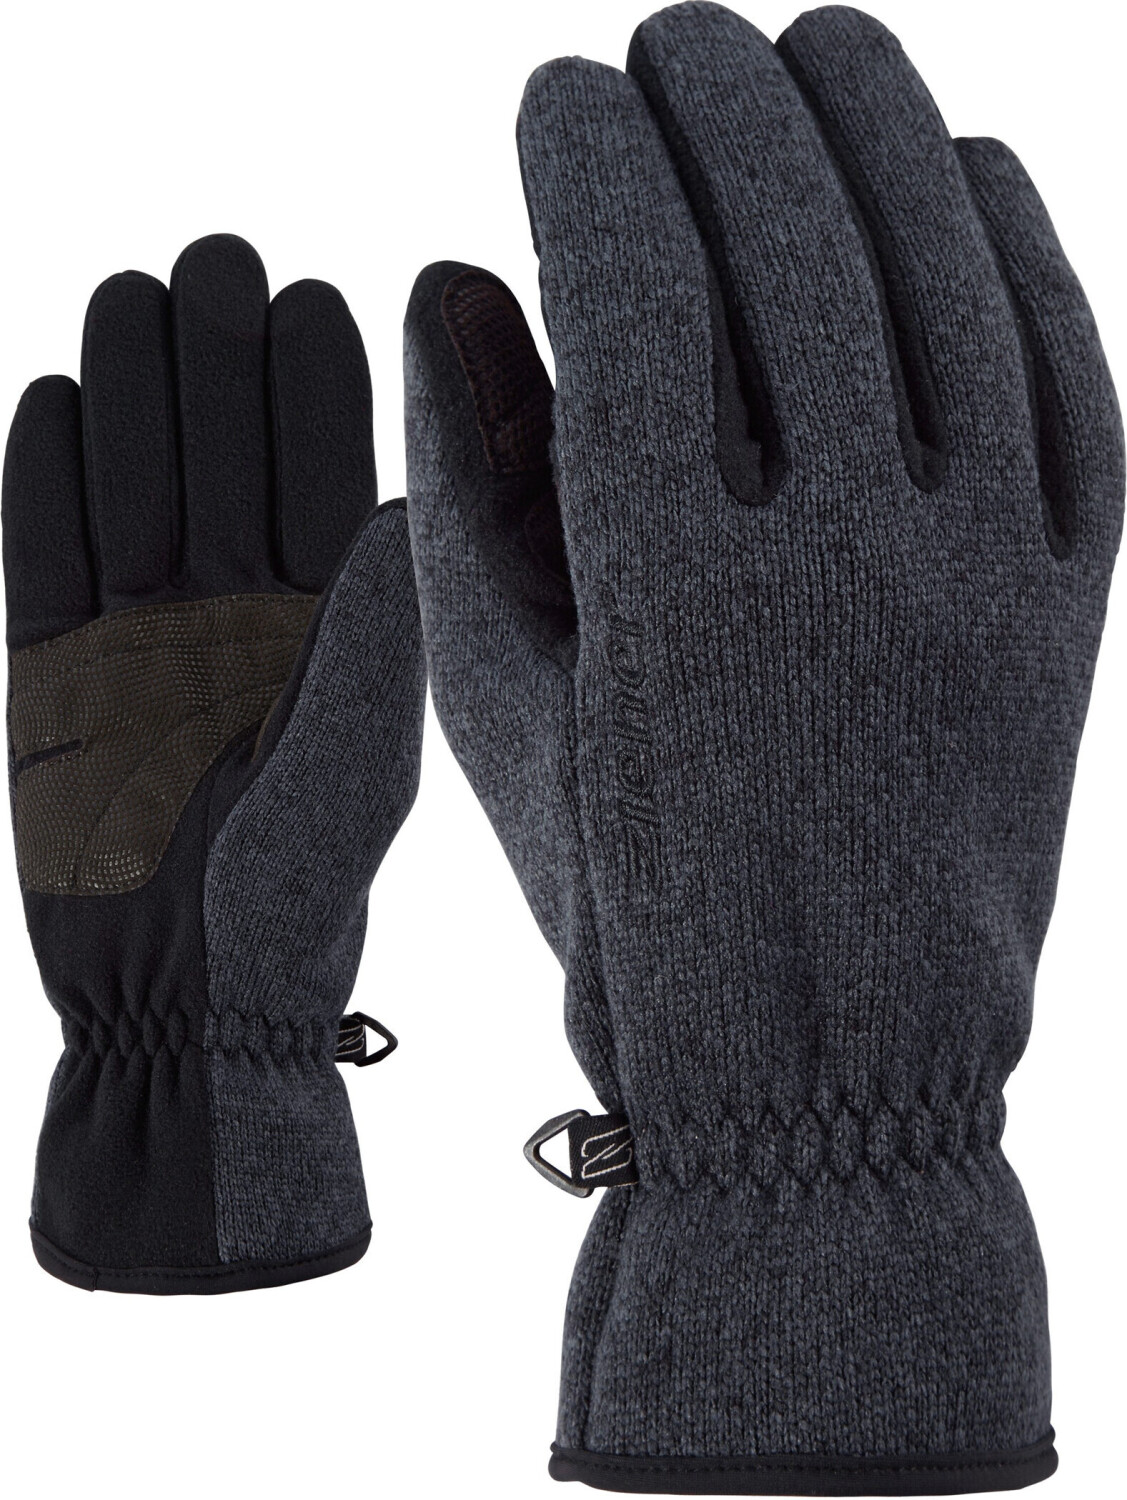 Ziener Imagio Glove (802001) ab 24,75 € | Preisvergleich bei